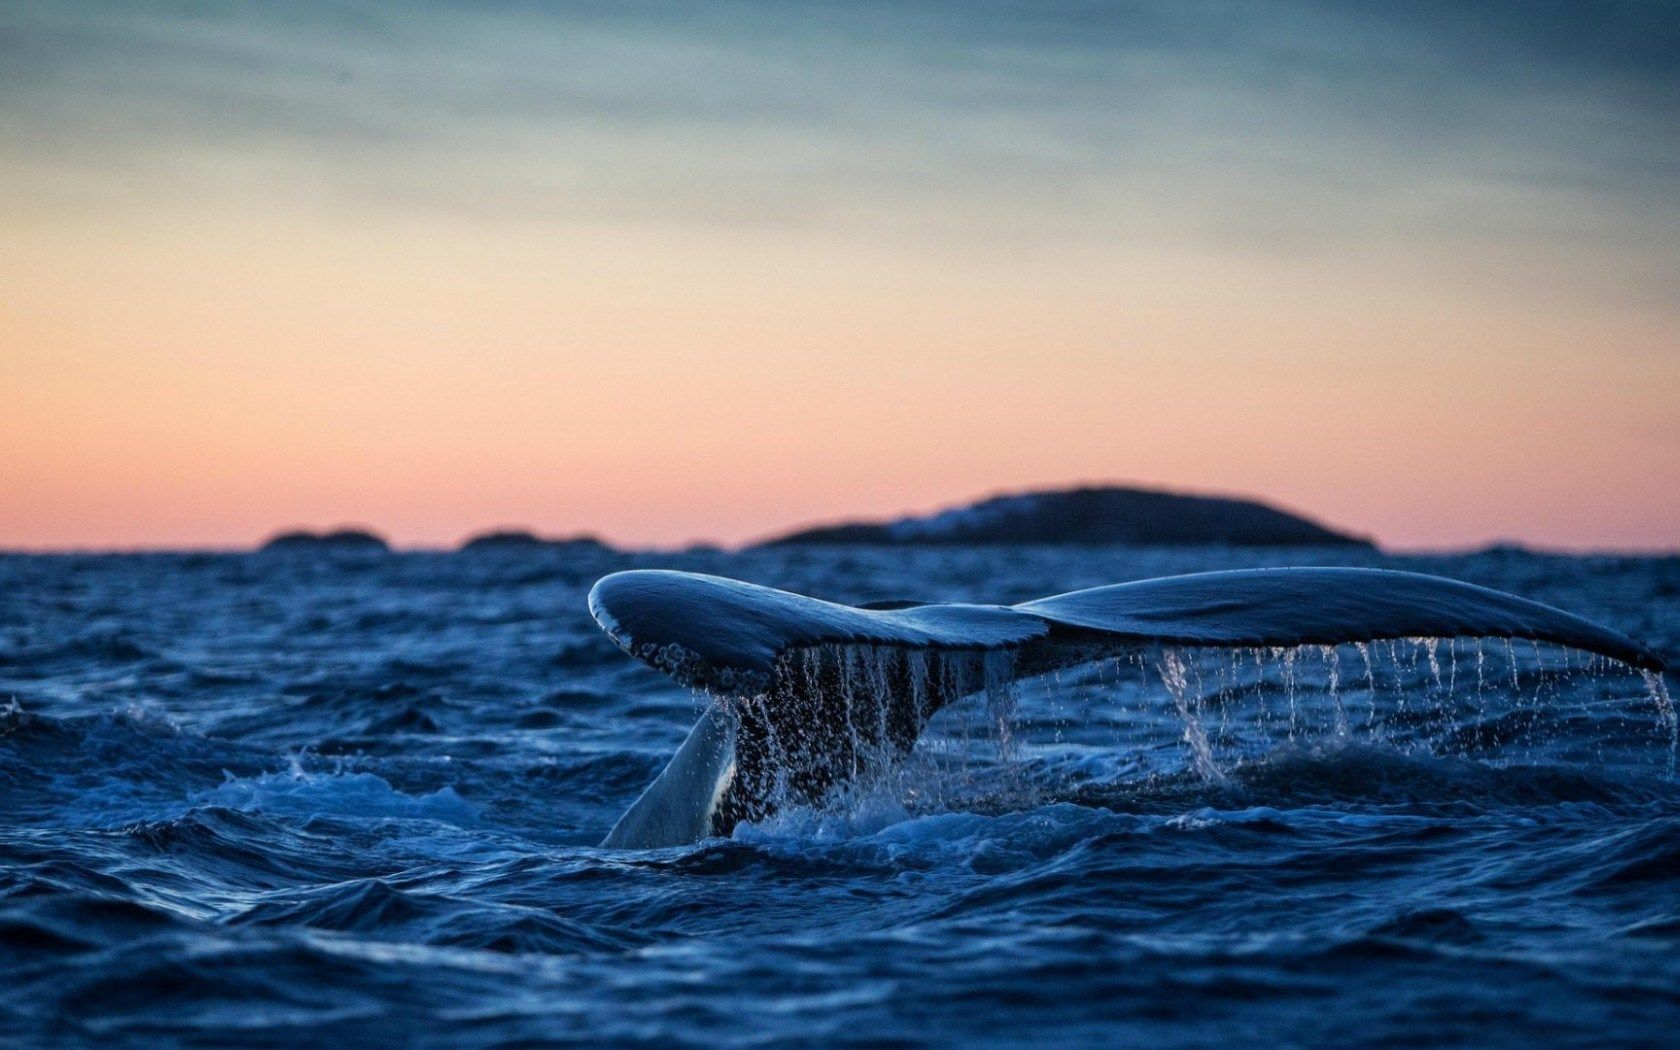 تصویر جالب و دیدنی از دم نهنگ با کیفیت بسیار بالا 